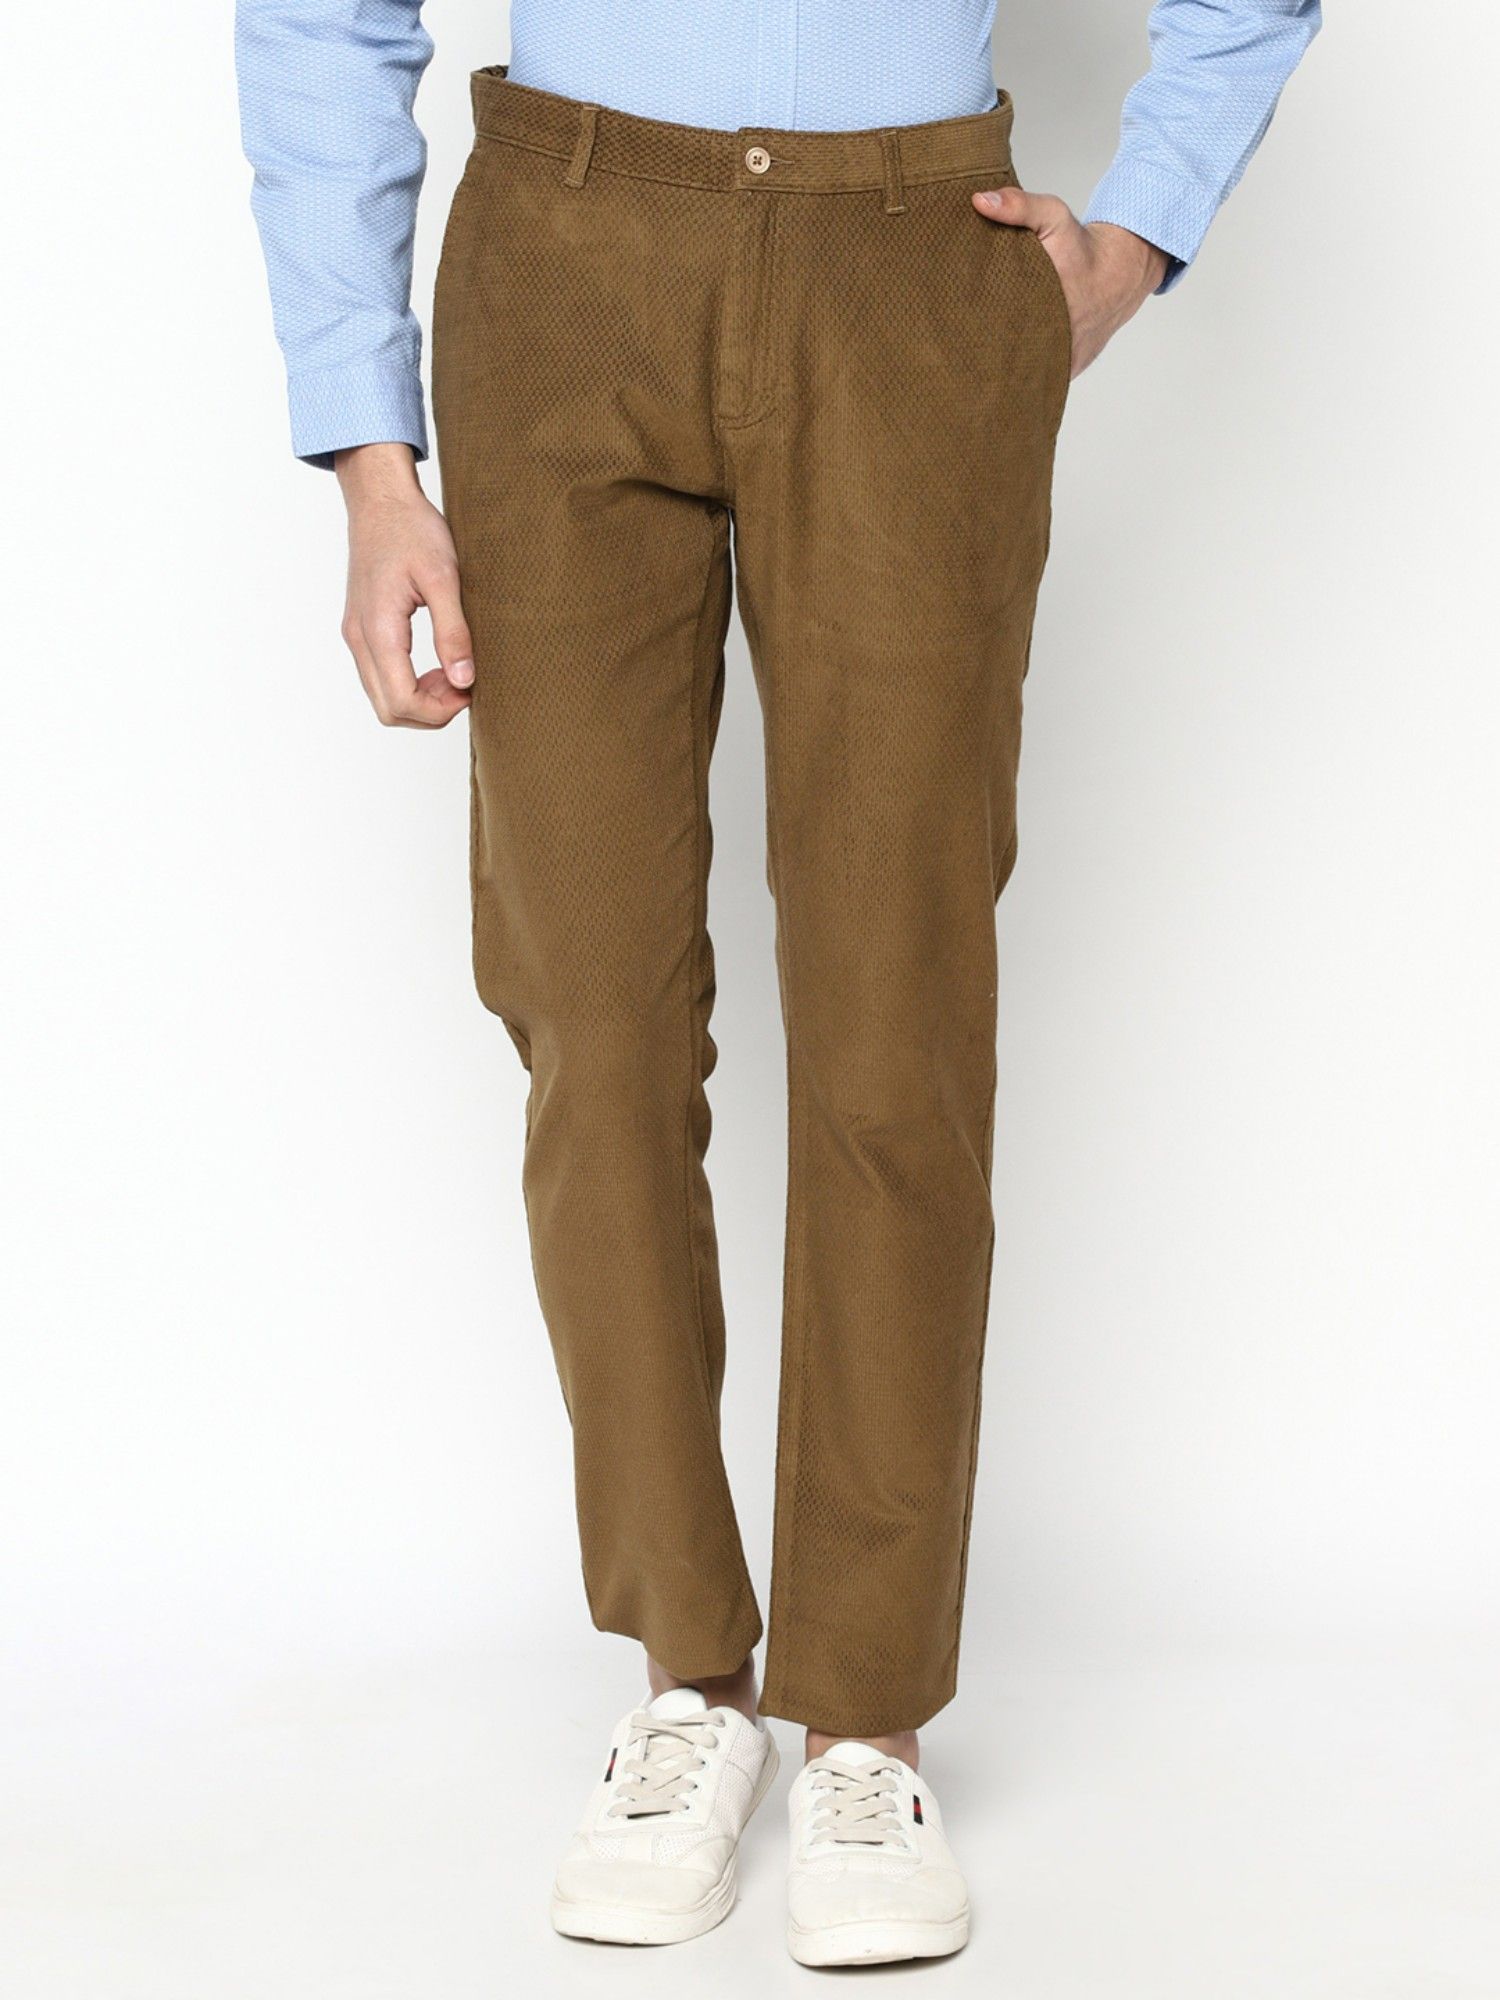 Buy blackberrys Men's Skinny Fit Casual Trousers (EK-Kameko # Khaki 40W x  33L) at Amazon.in